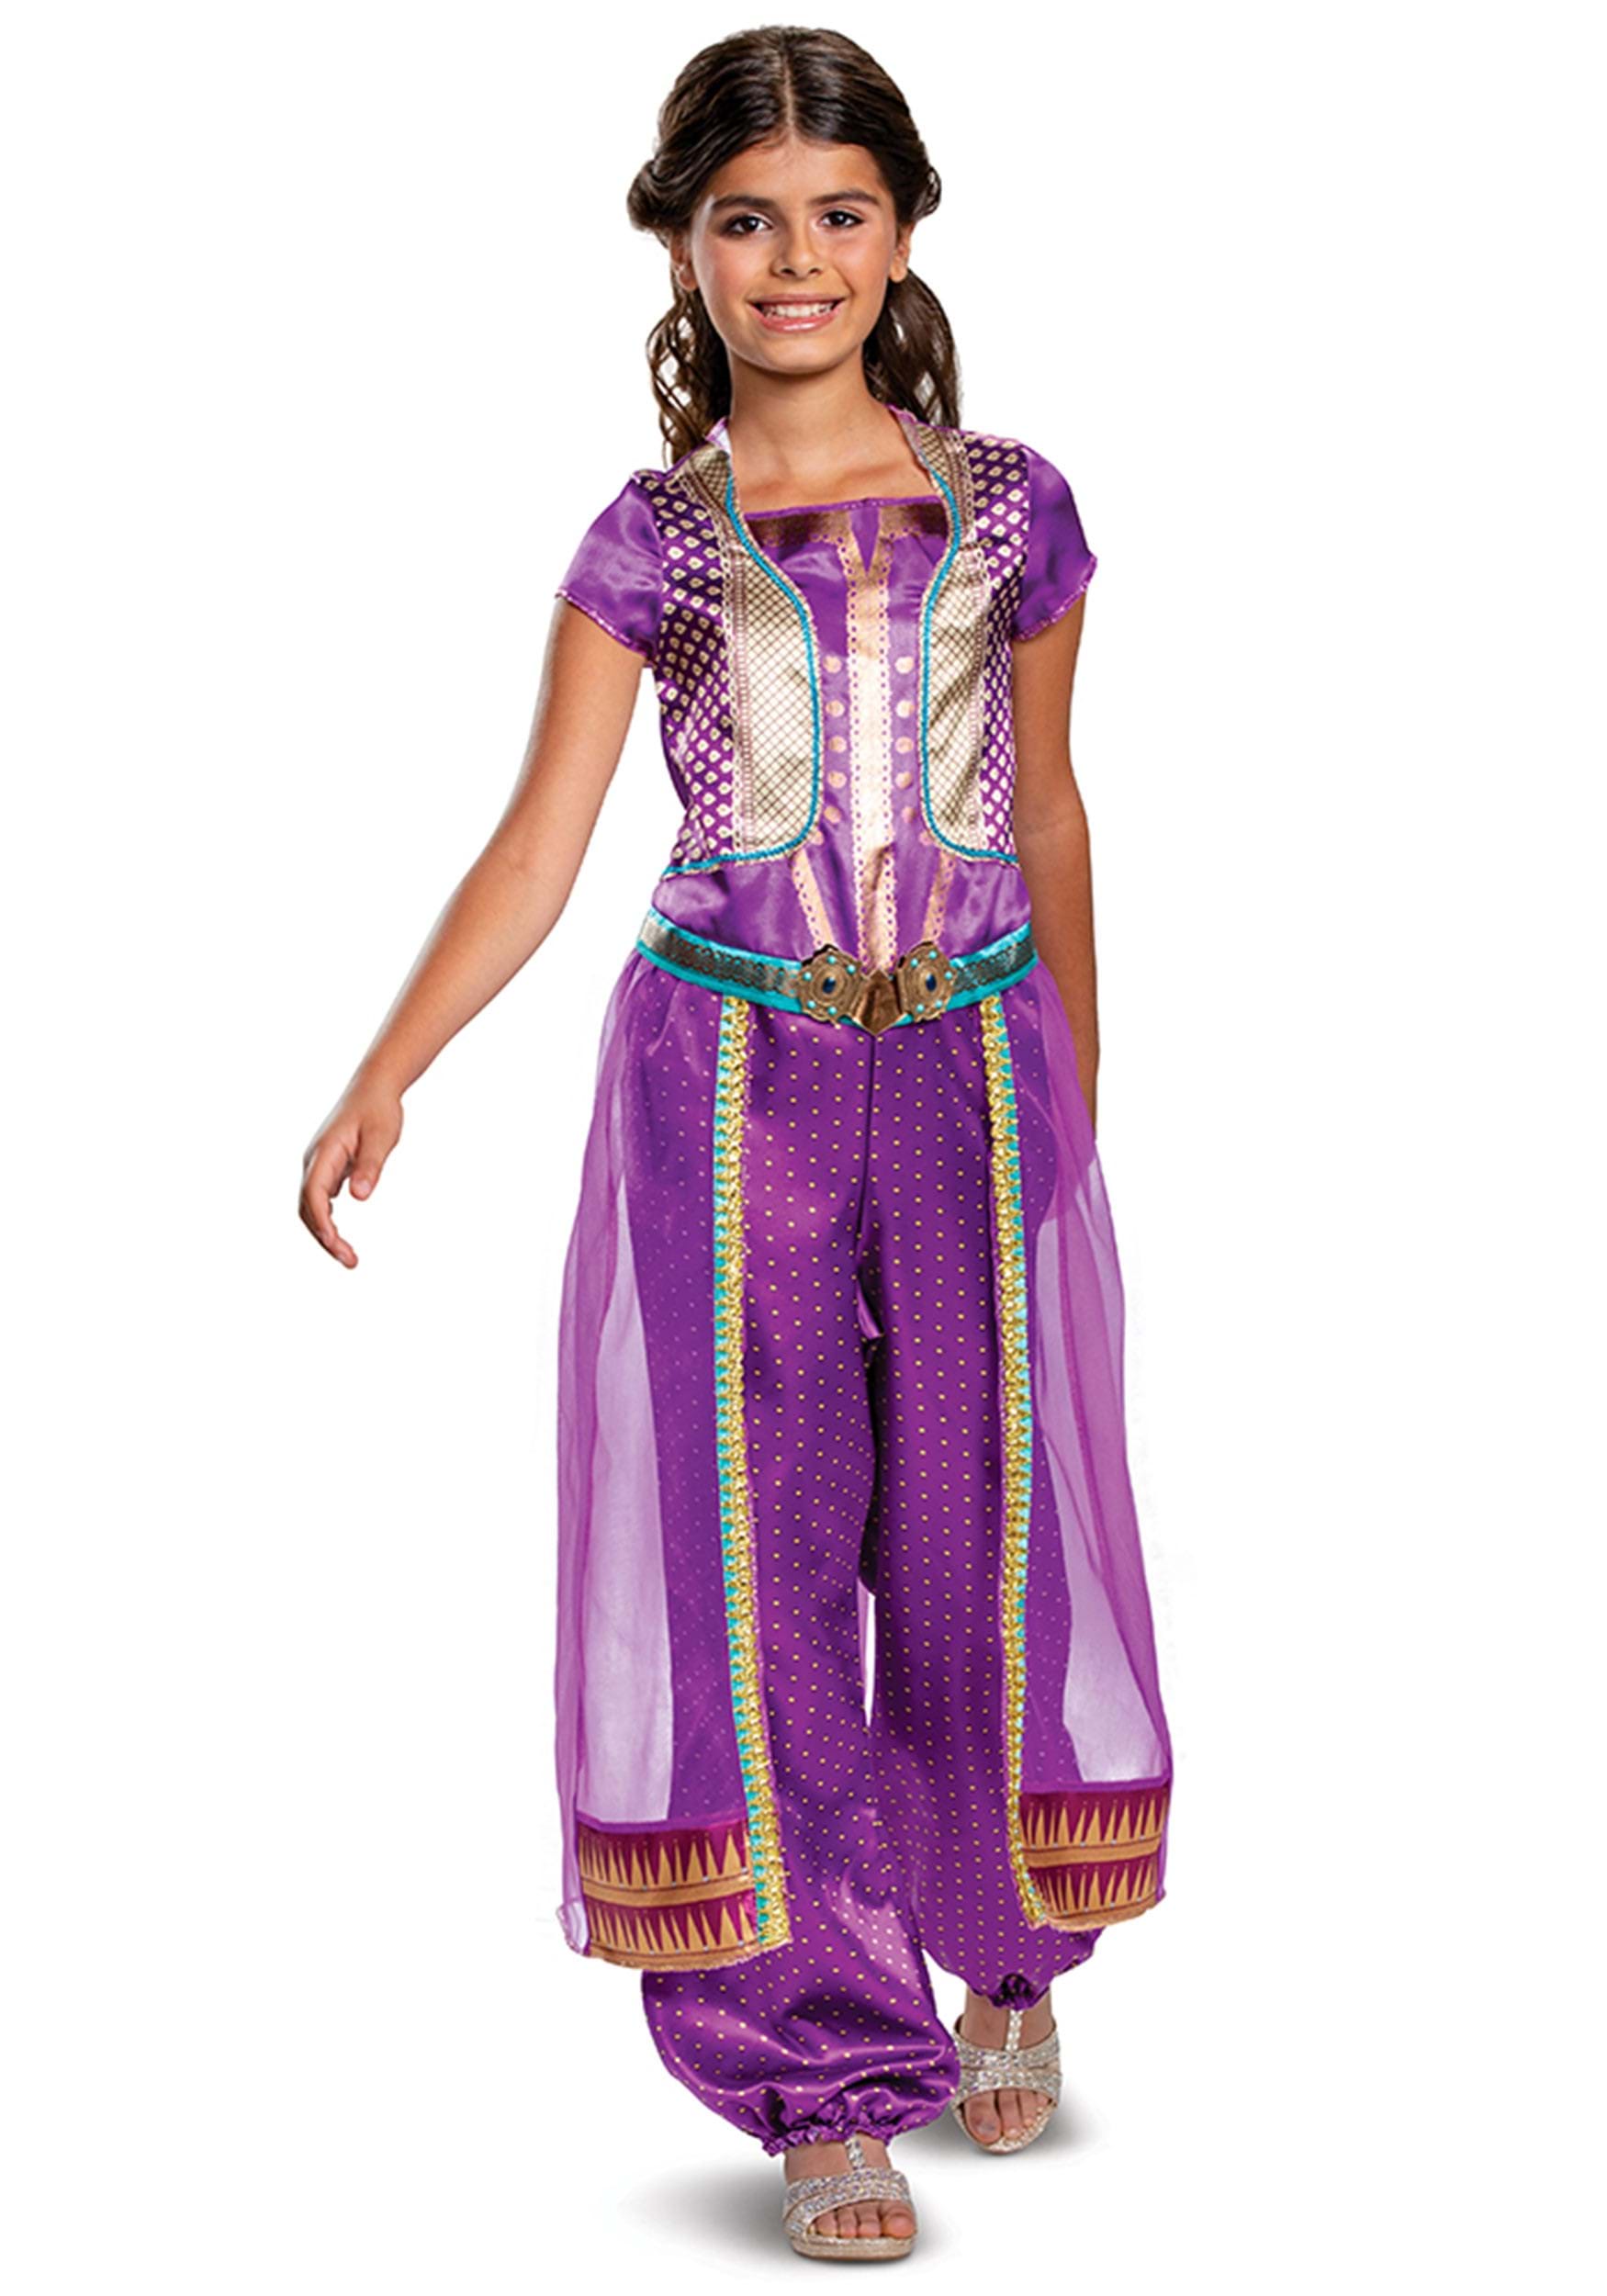 Purple Classic Aladdin Live Action Child Jasmine Costume